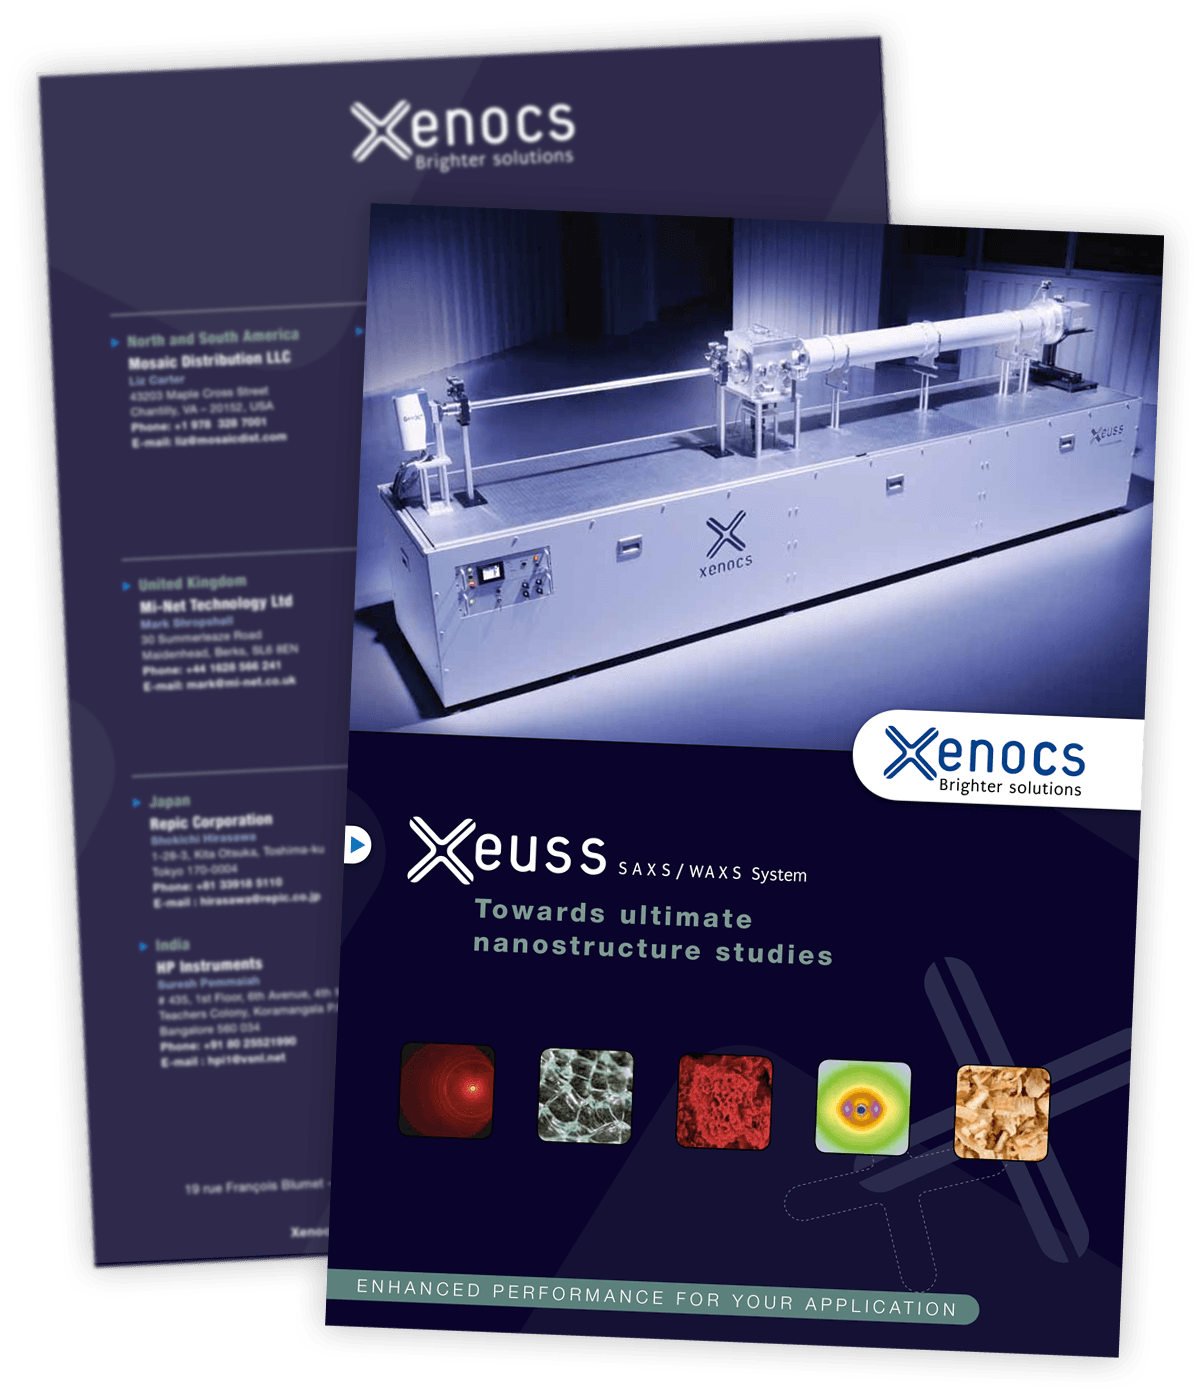 Plaquette produit Xeuss créée pour Xenocs par Caramel & Paprika - Première et dernière pages de couverture (photos © Franck Crispin, visuels additionnels © Xenocs et Fotolia)